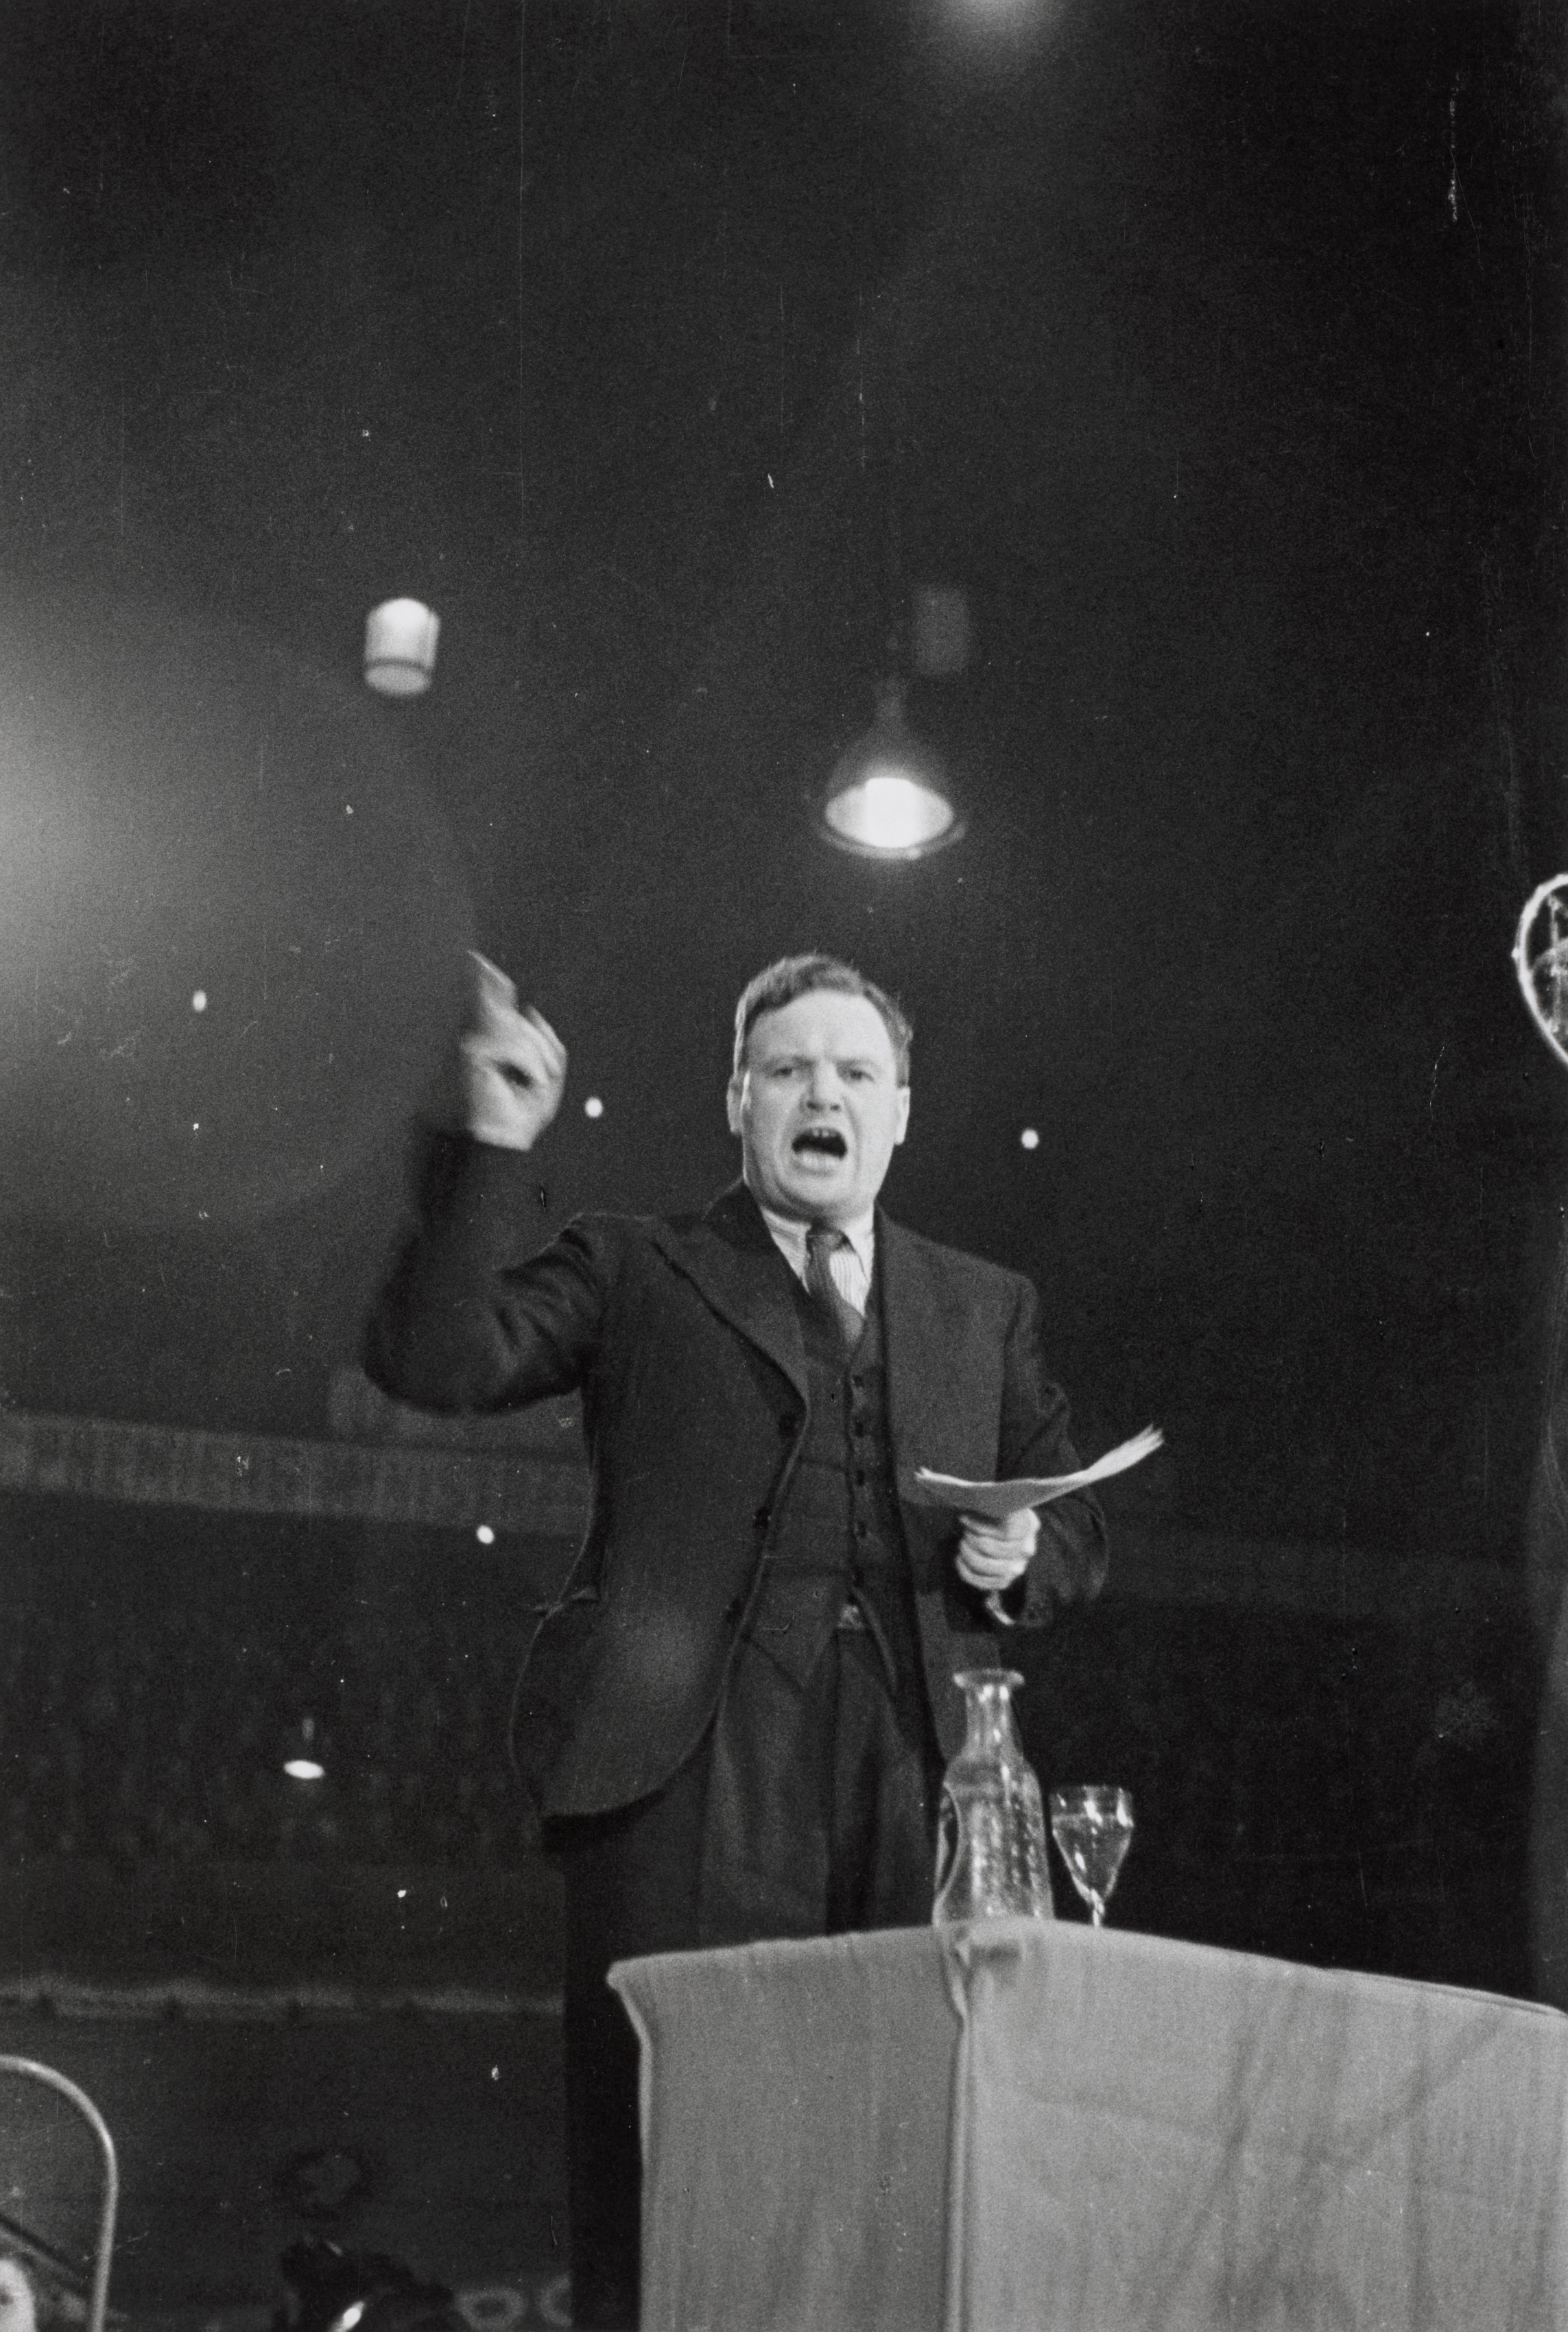 Maurice Thorez Speaking at Podium, Velodrome d'Hiver, 15th Arrondissement, Paris, 1936